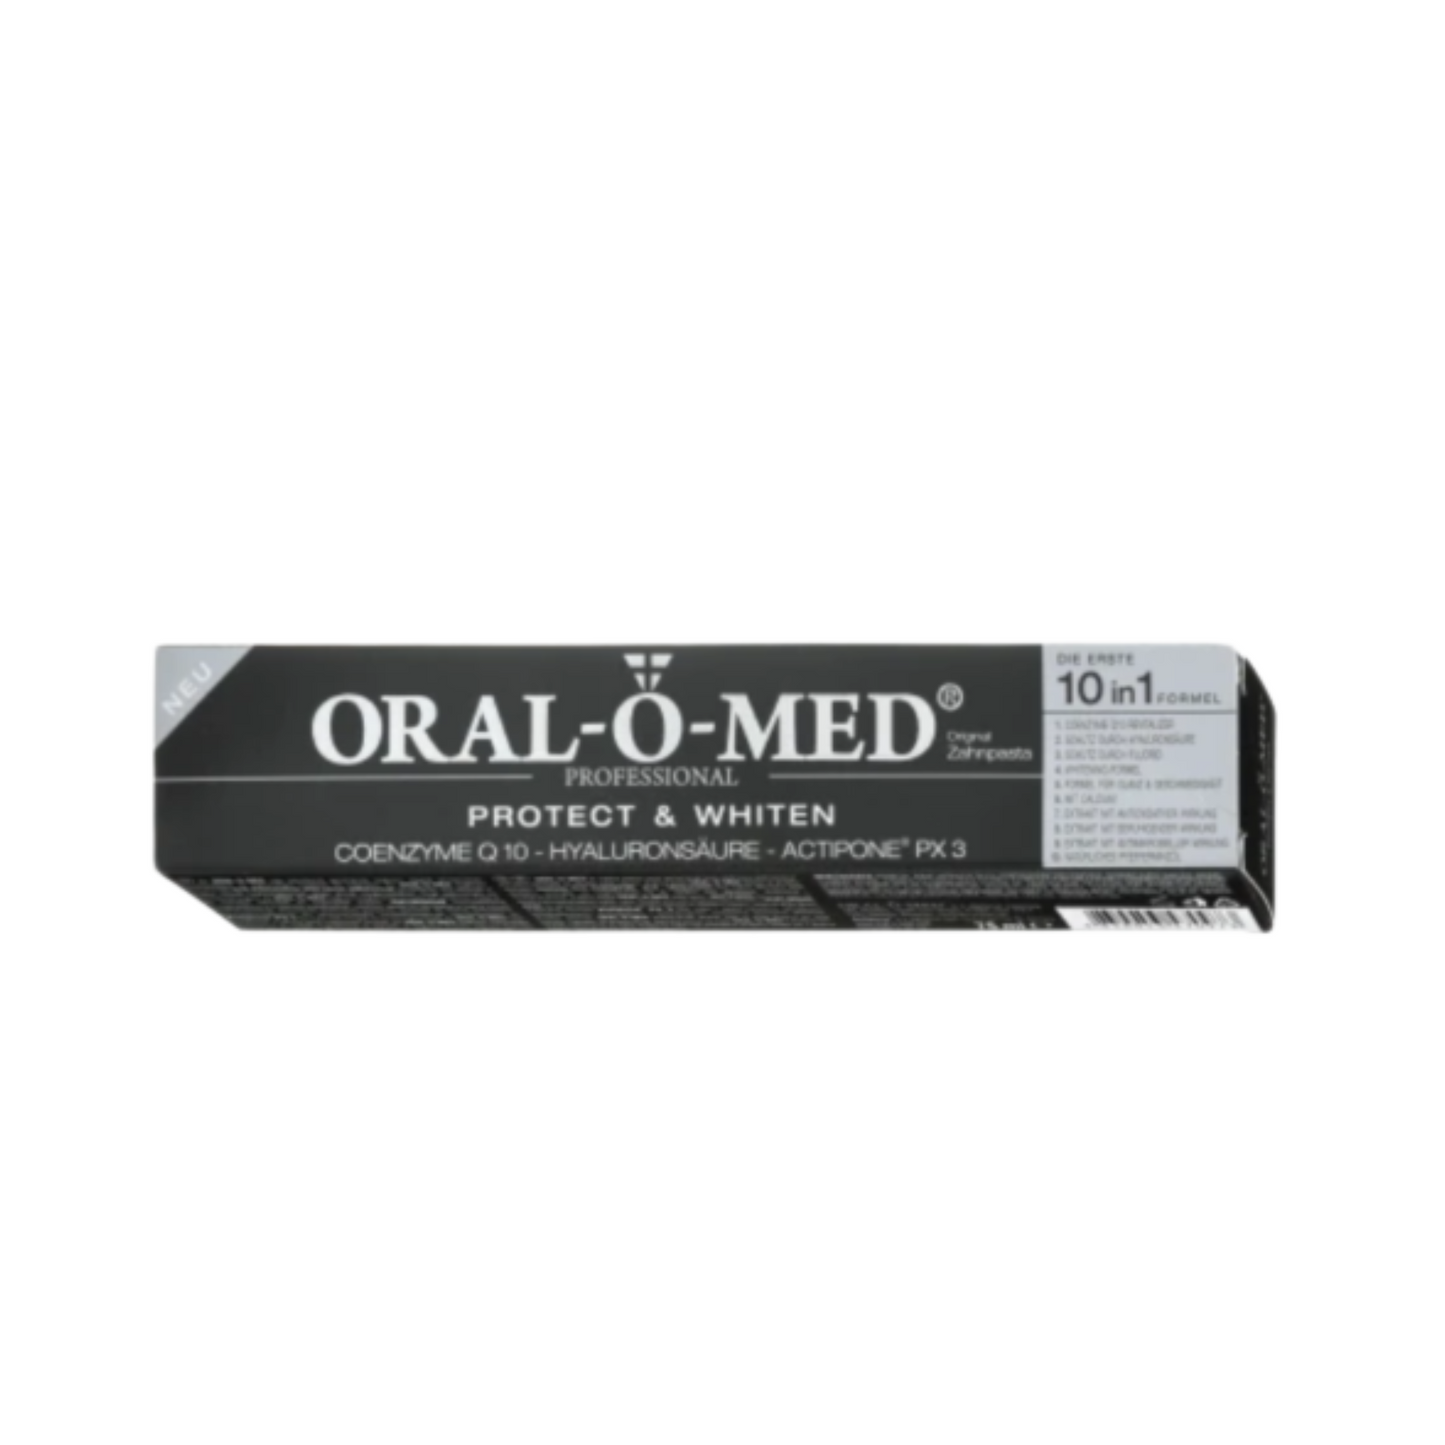 <tc>ORAL-O-MED zobna pasta PROTECT & WHITEN Original</tc>